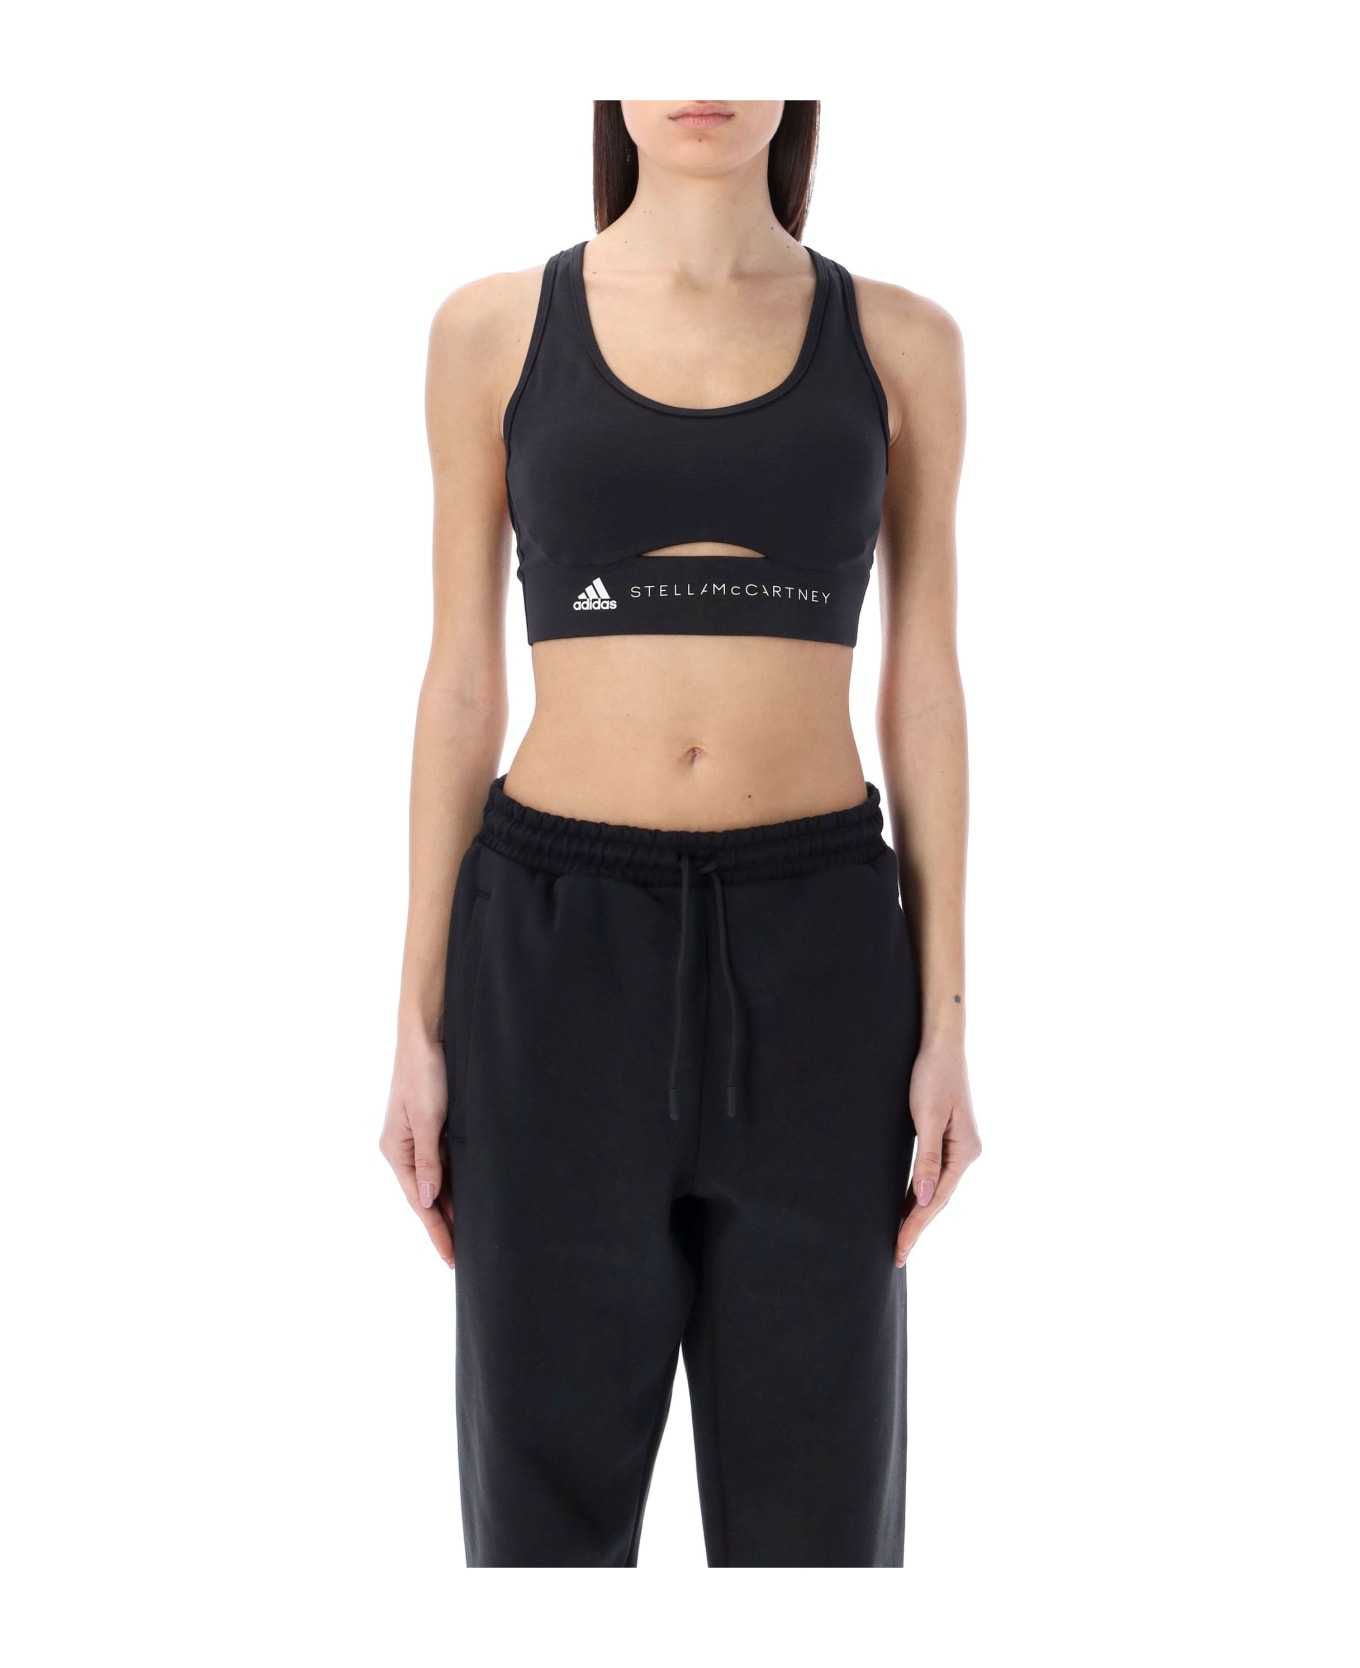 Adidas by Stella McCartney Truestrength Yoga Medium Support Sports